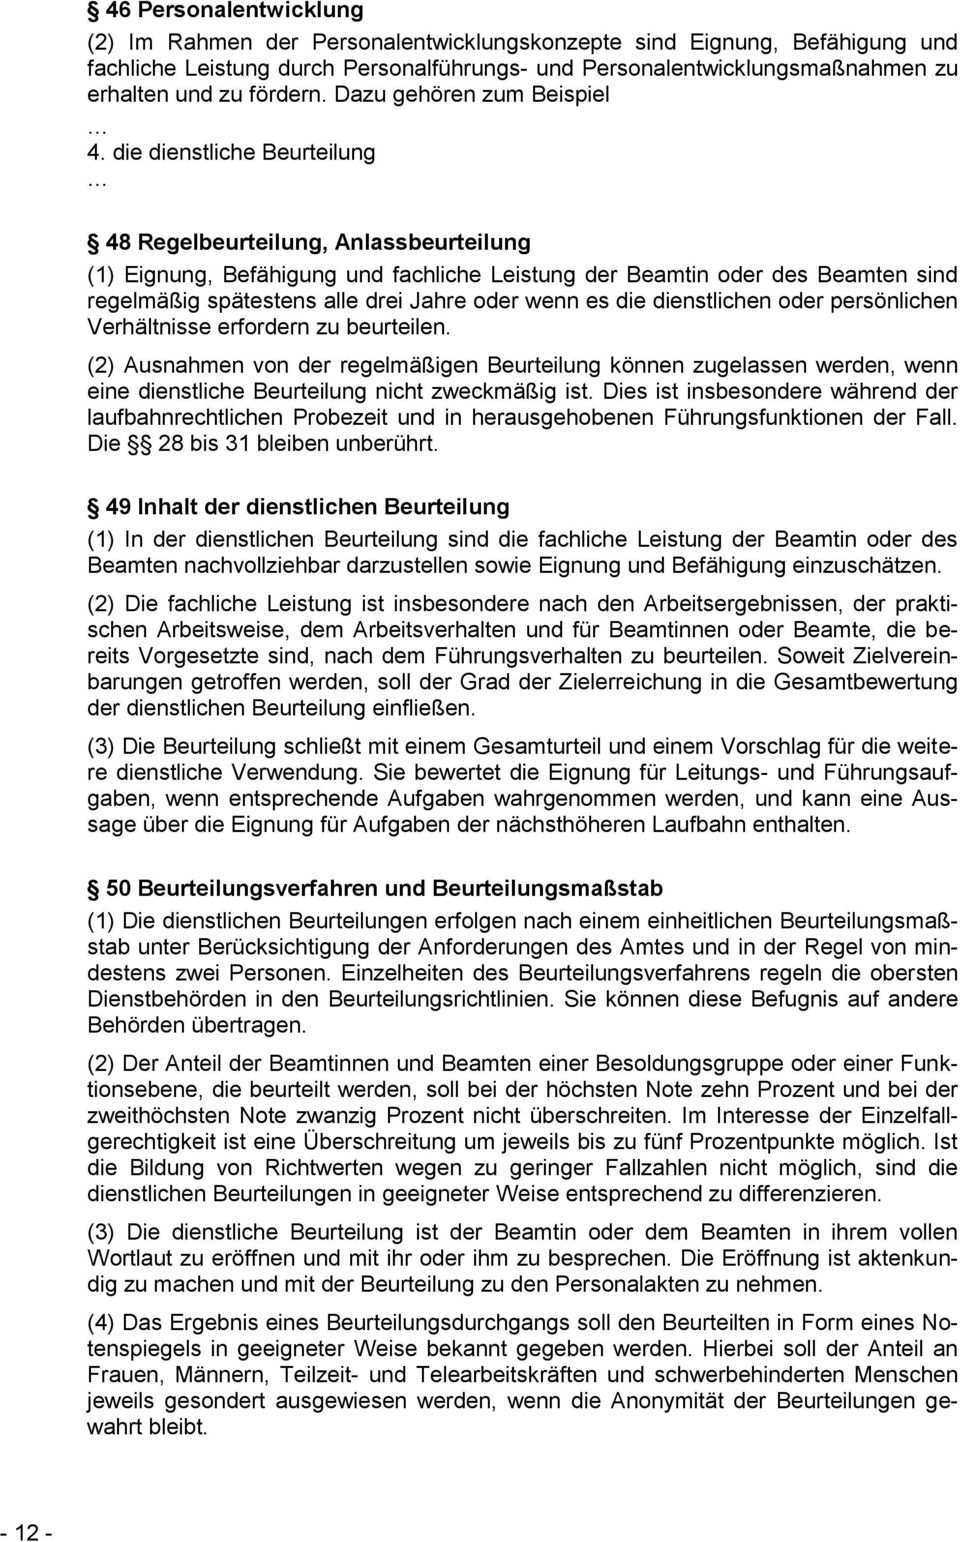 Dienstliche Beurteilung Und Beforderung Im Bereich Des Landesamtes Fur Steuern Rheinland Pfalz Pdf Free Download